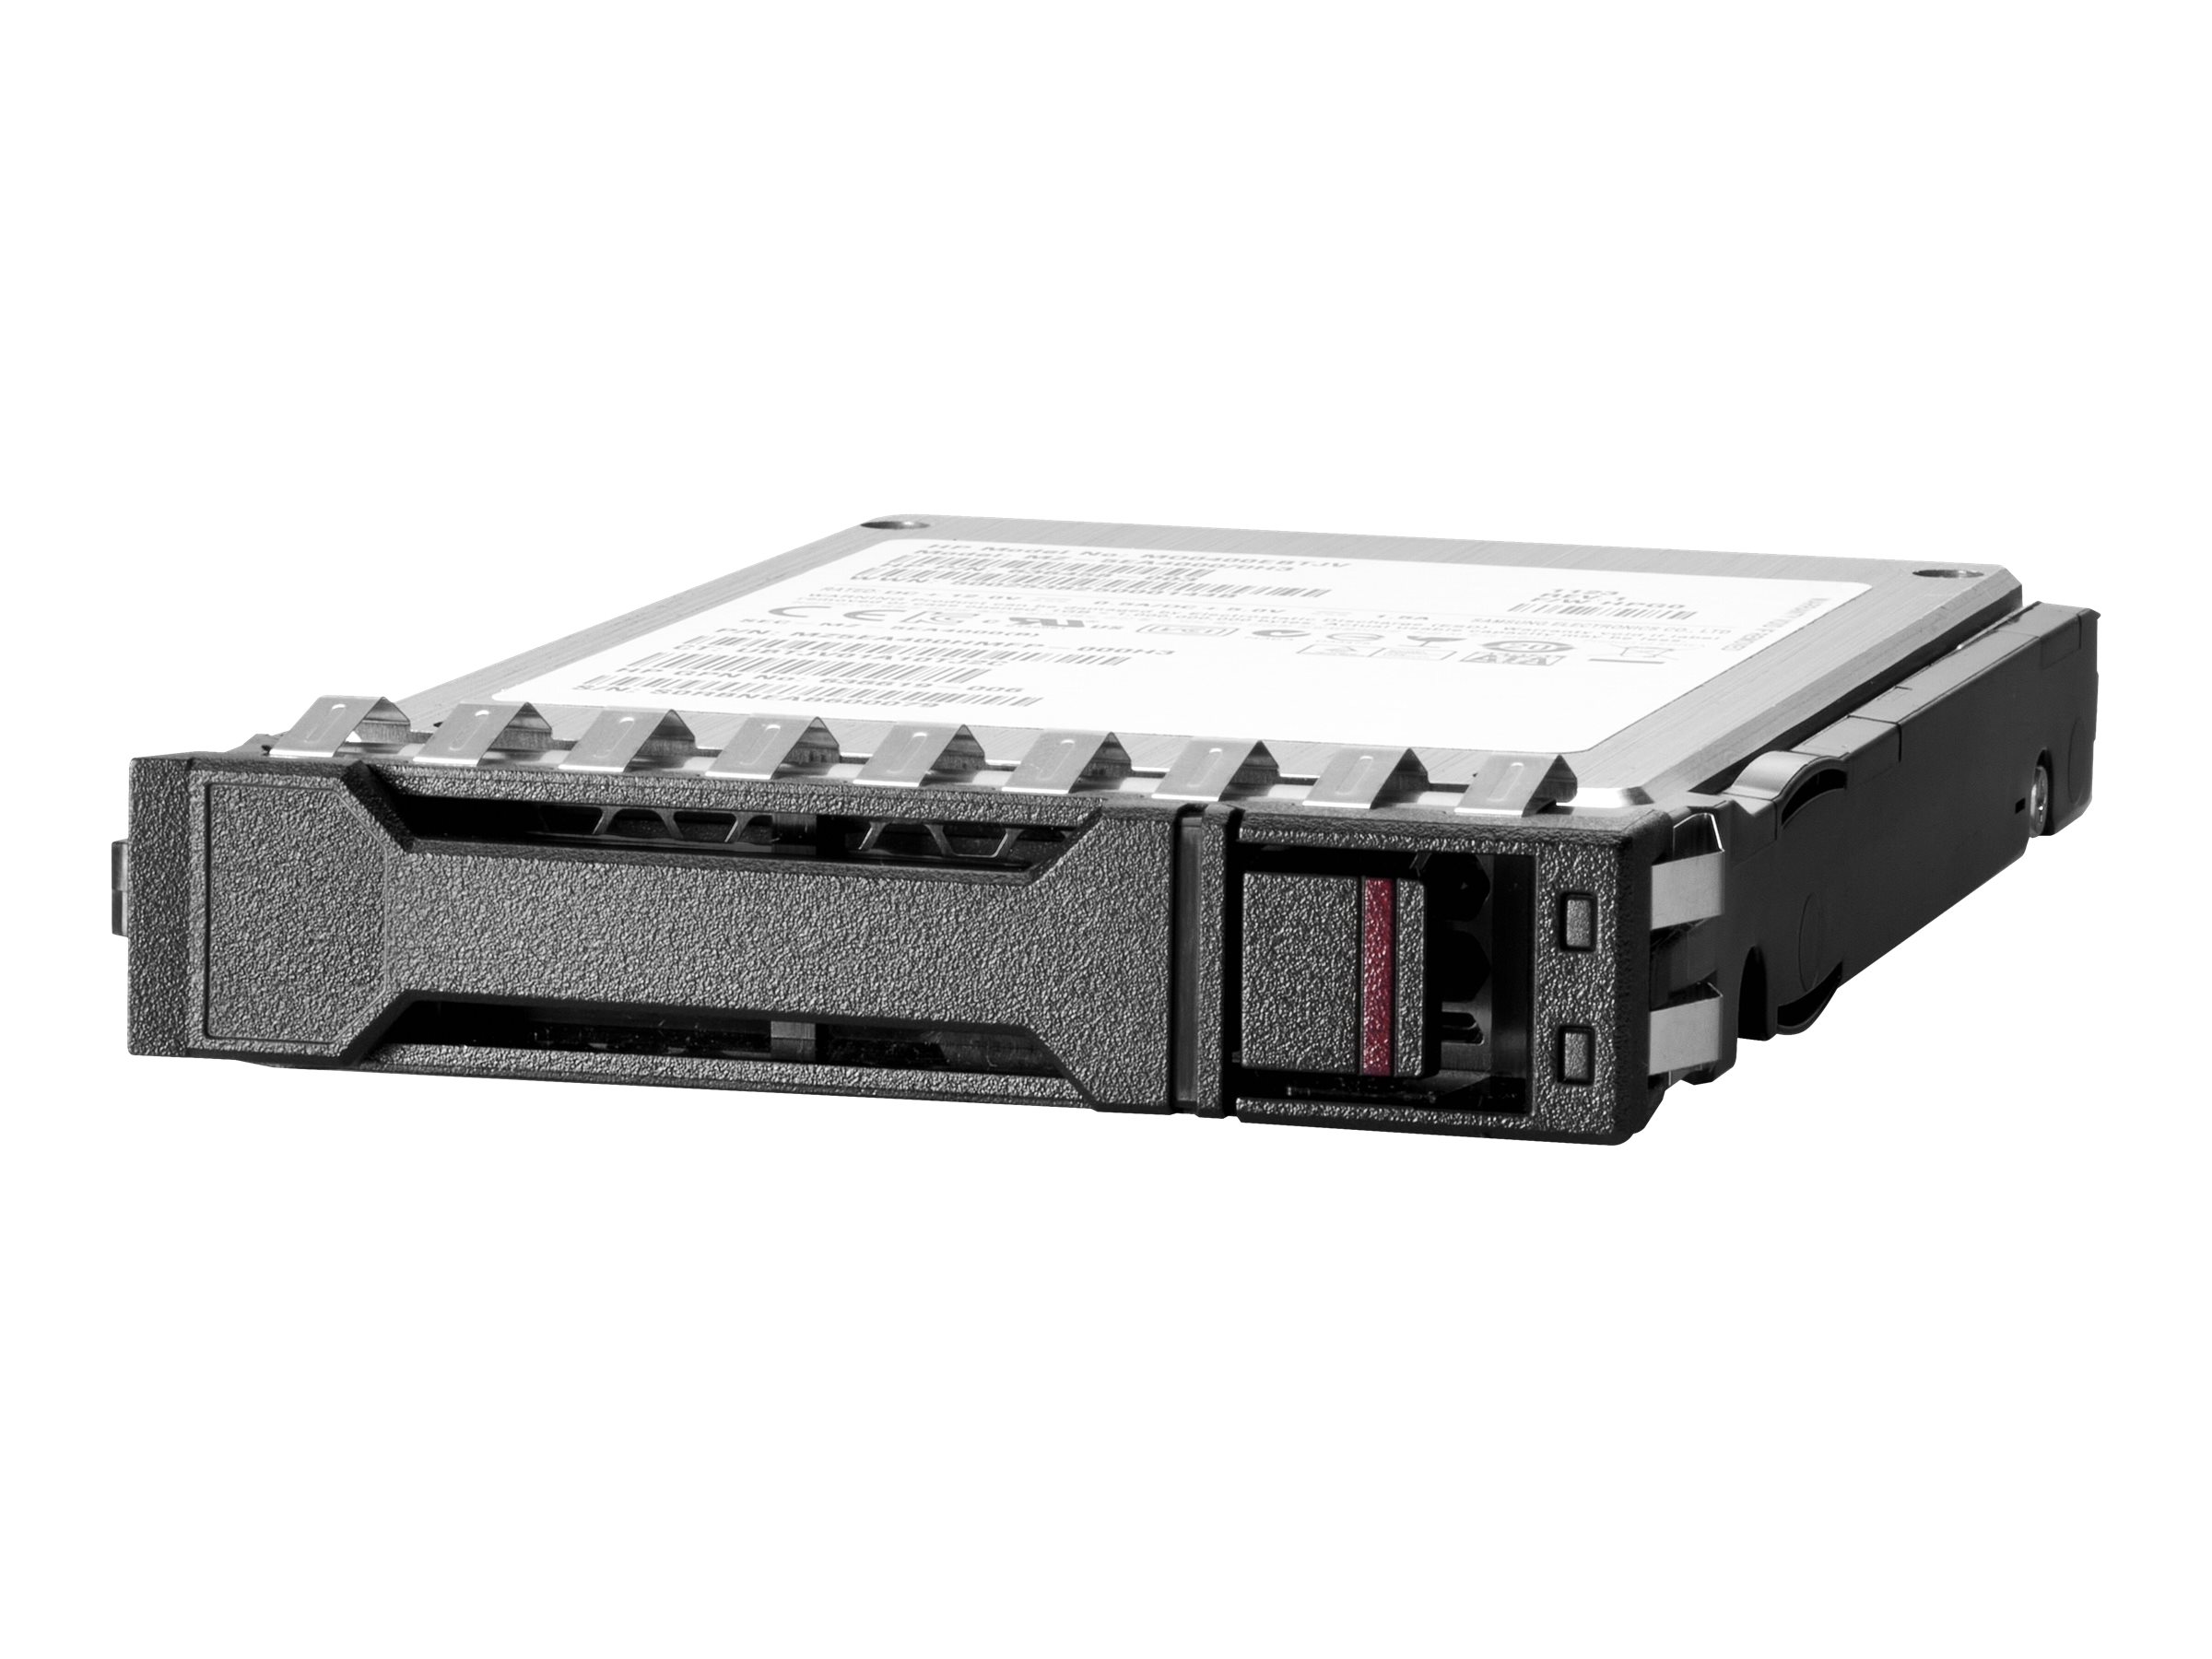 HPE - SSD - verschlsselt - 1.92 TB - Hot-Swap - 2.5